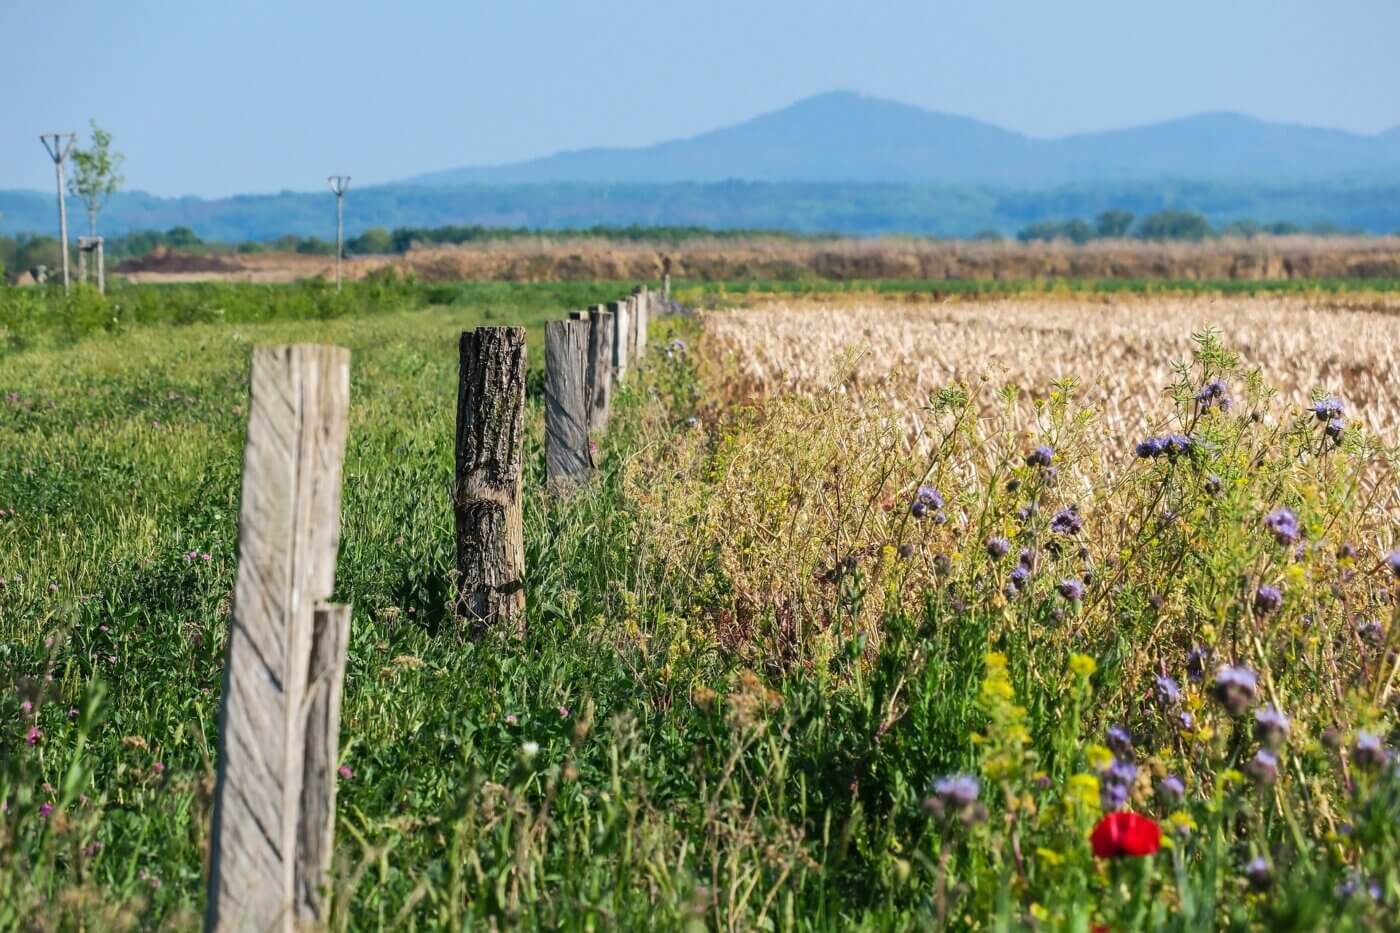 Auf dem Foto sieht man ein Feld, am Rand mit Wildblumen bewachsen, mittig Reste eines alten Holzzaunes und im Hintergrund verschleierte Berge.